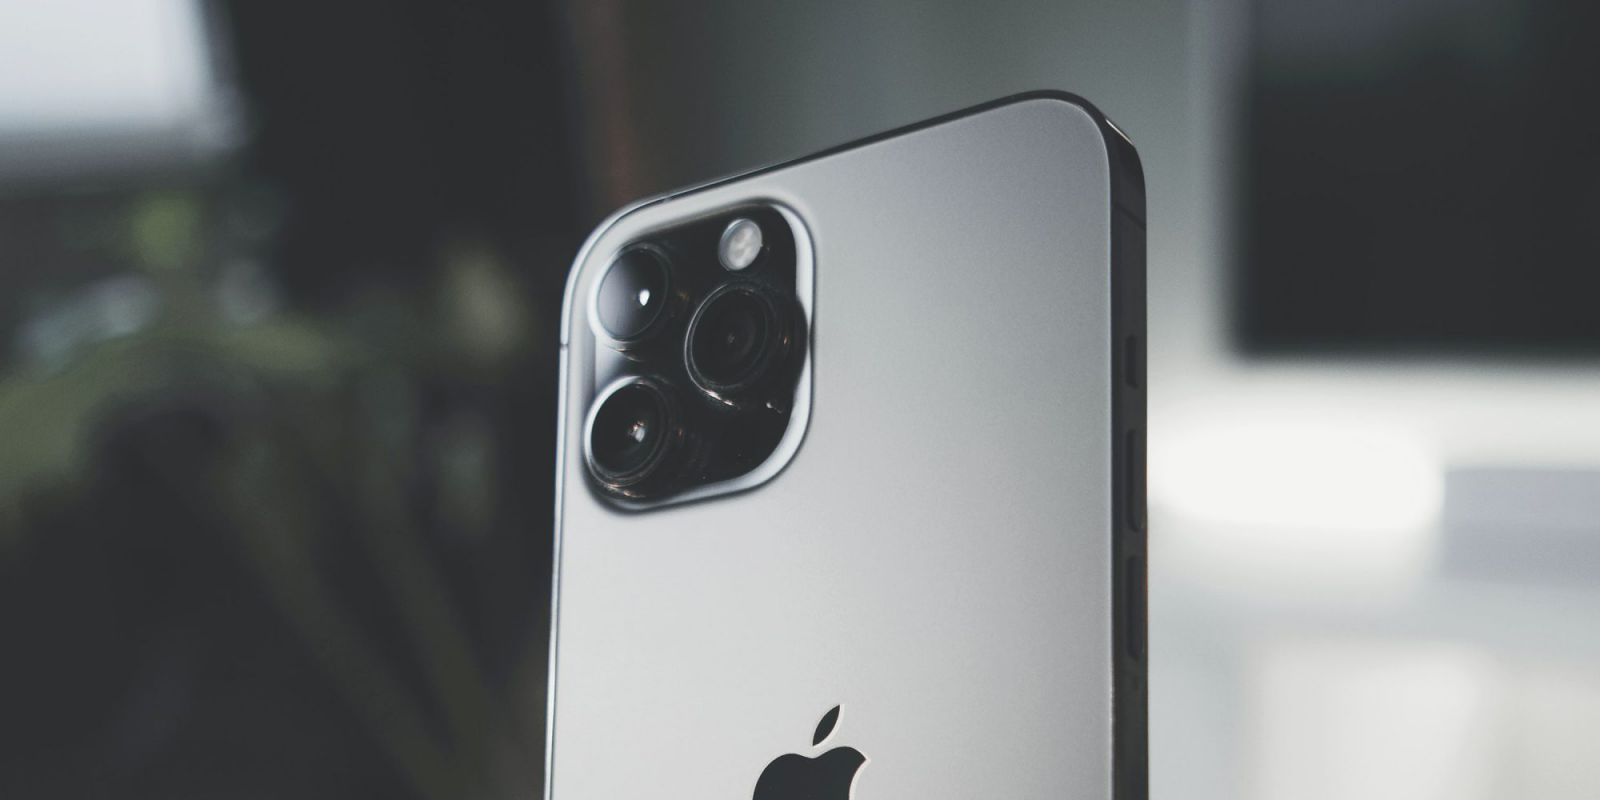 Với tính năng ổn định hình ảnh mới, iPhone 13 sẽ giúp bạn chụp những bức ảnh tuyệt đẹp và sắc nét hơn. Hãy xem hình ảnh của sản phẩm này để cảm nhận và thấy rõ sự khác biệt với những thế hệ trước đây. Sẽ là một sự lựa chọn hoàn hảo cho những ai yêu thích nhiếp ảnh.